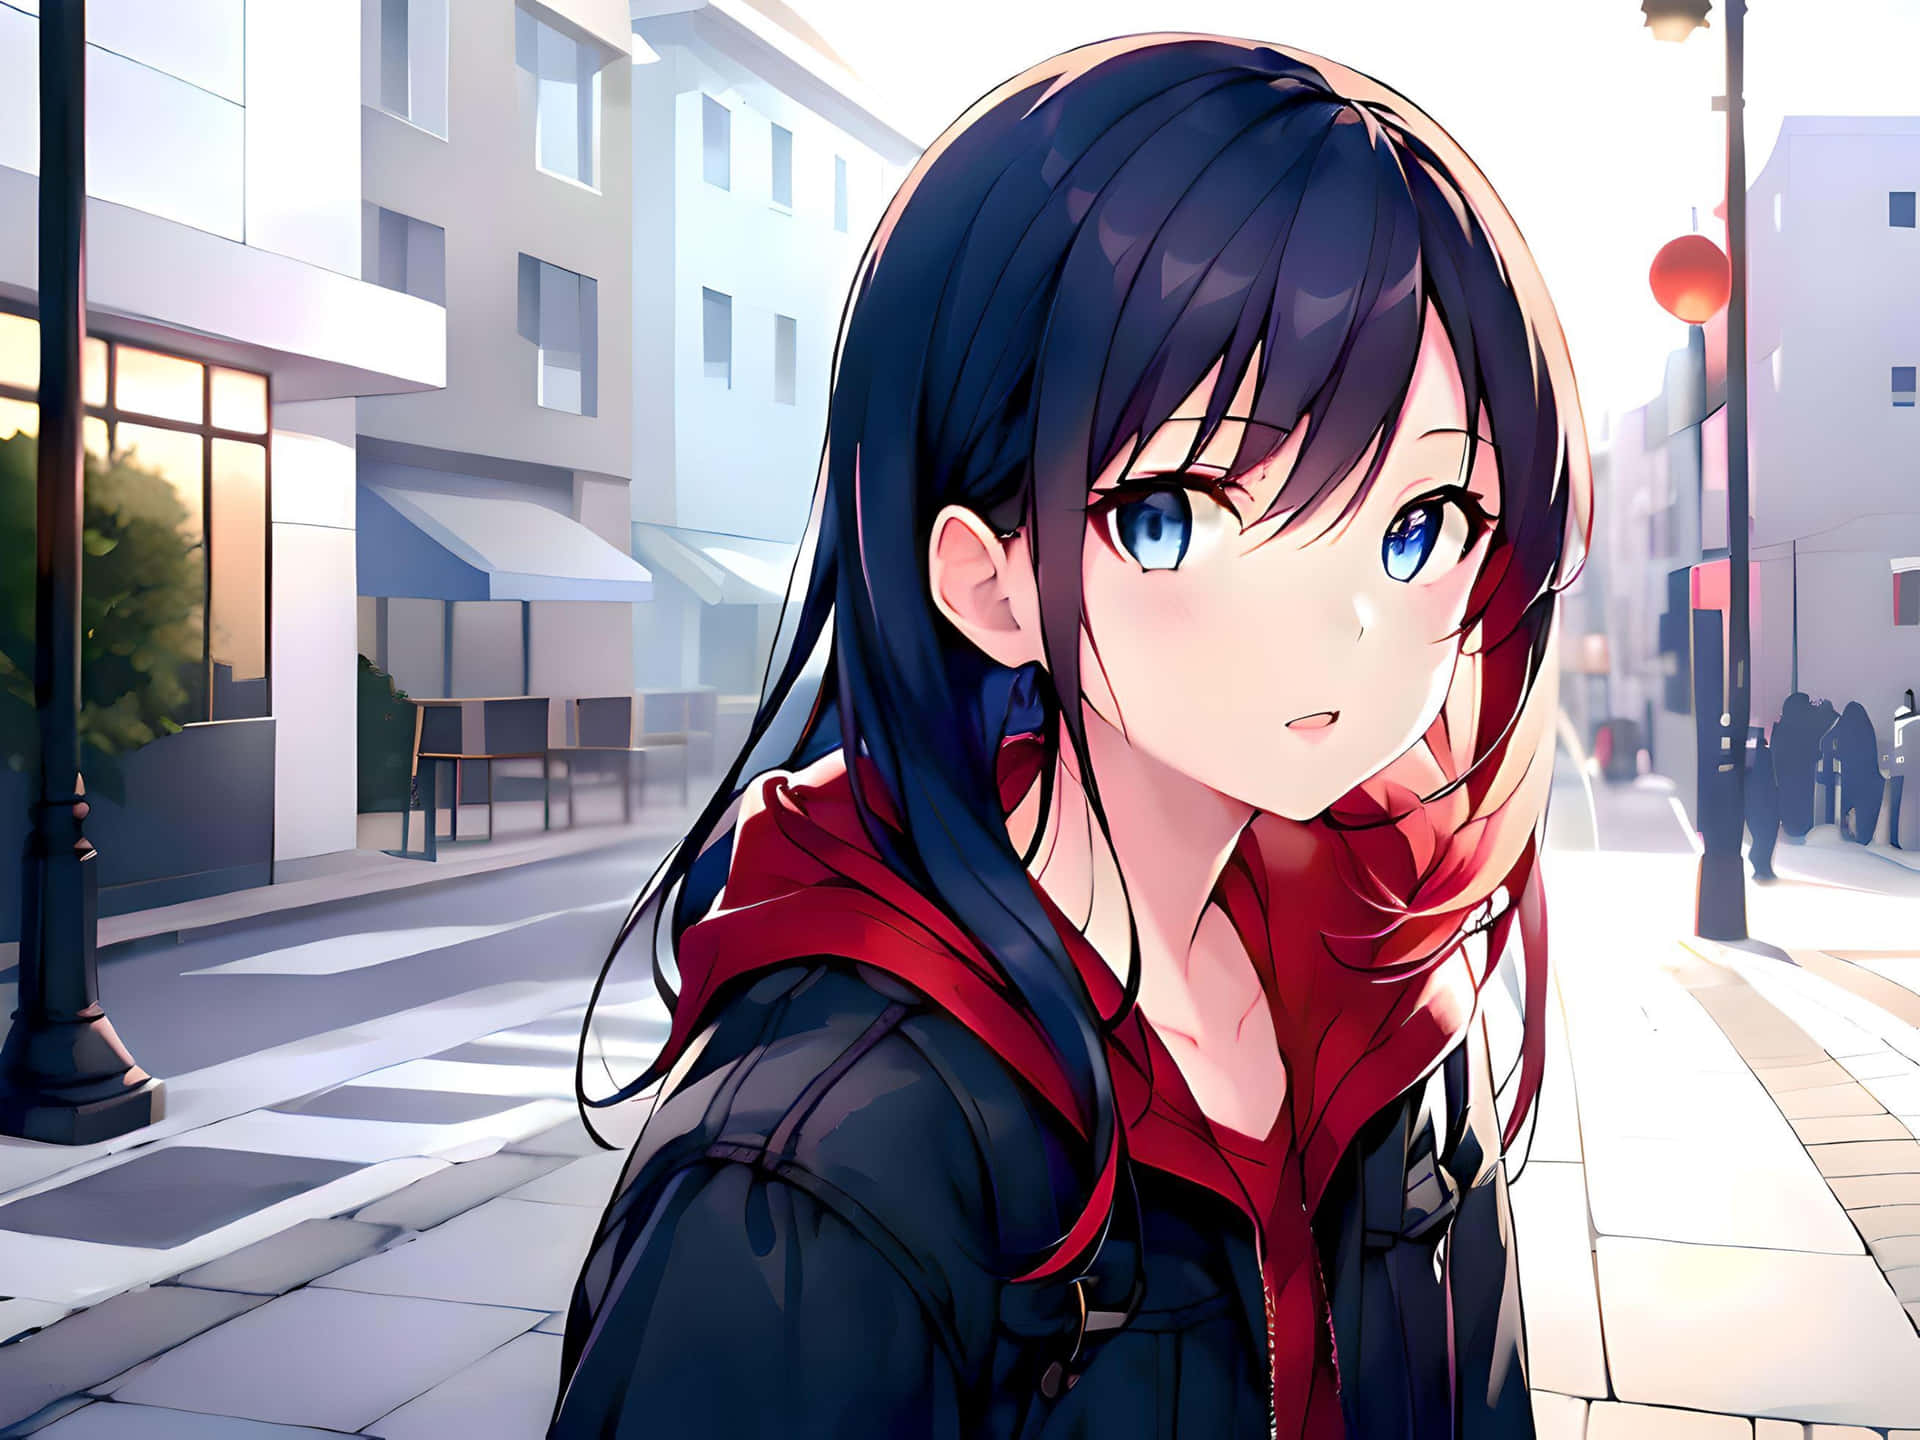 Anime Girlin Urban Setting Wallpaper